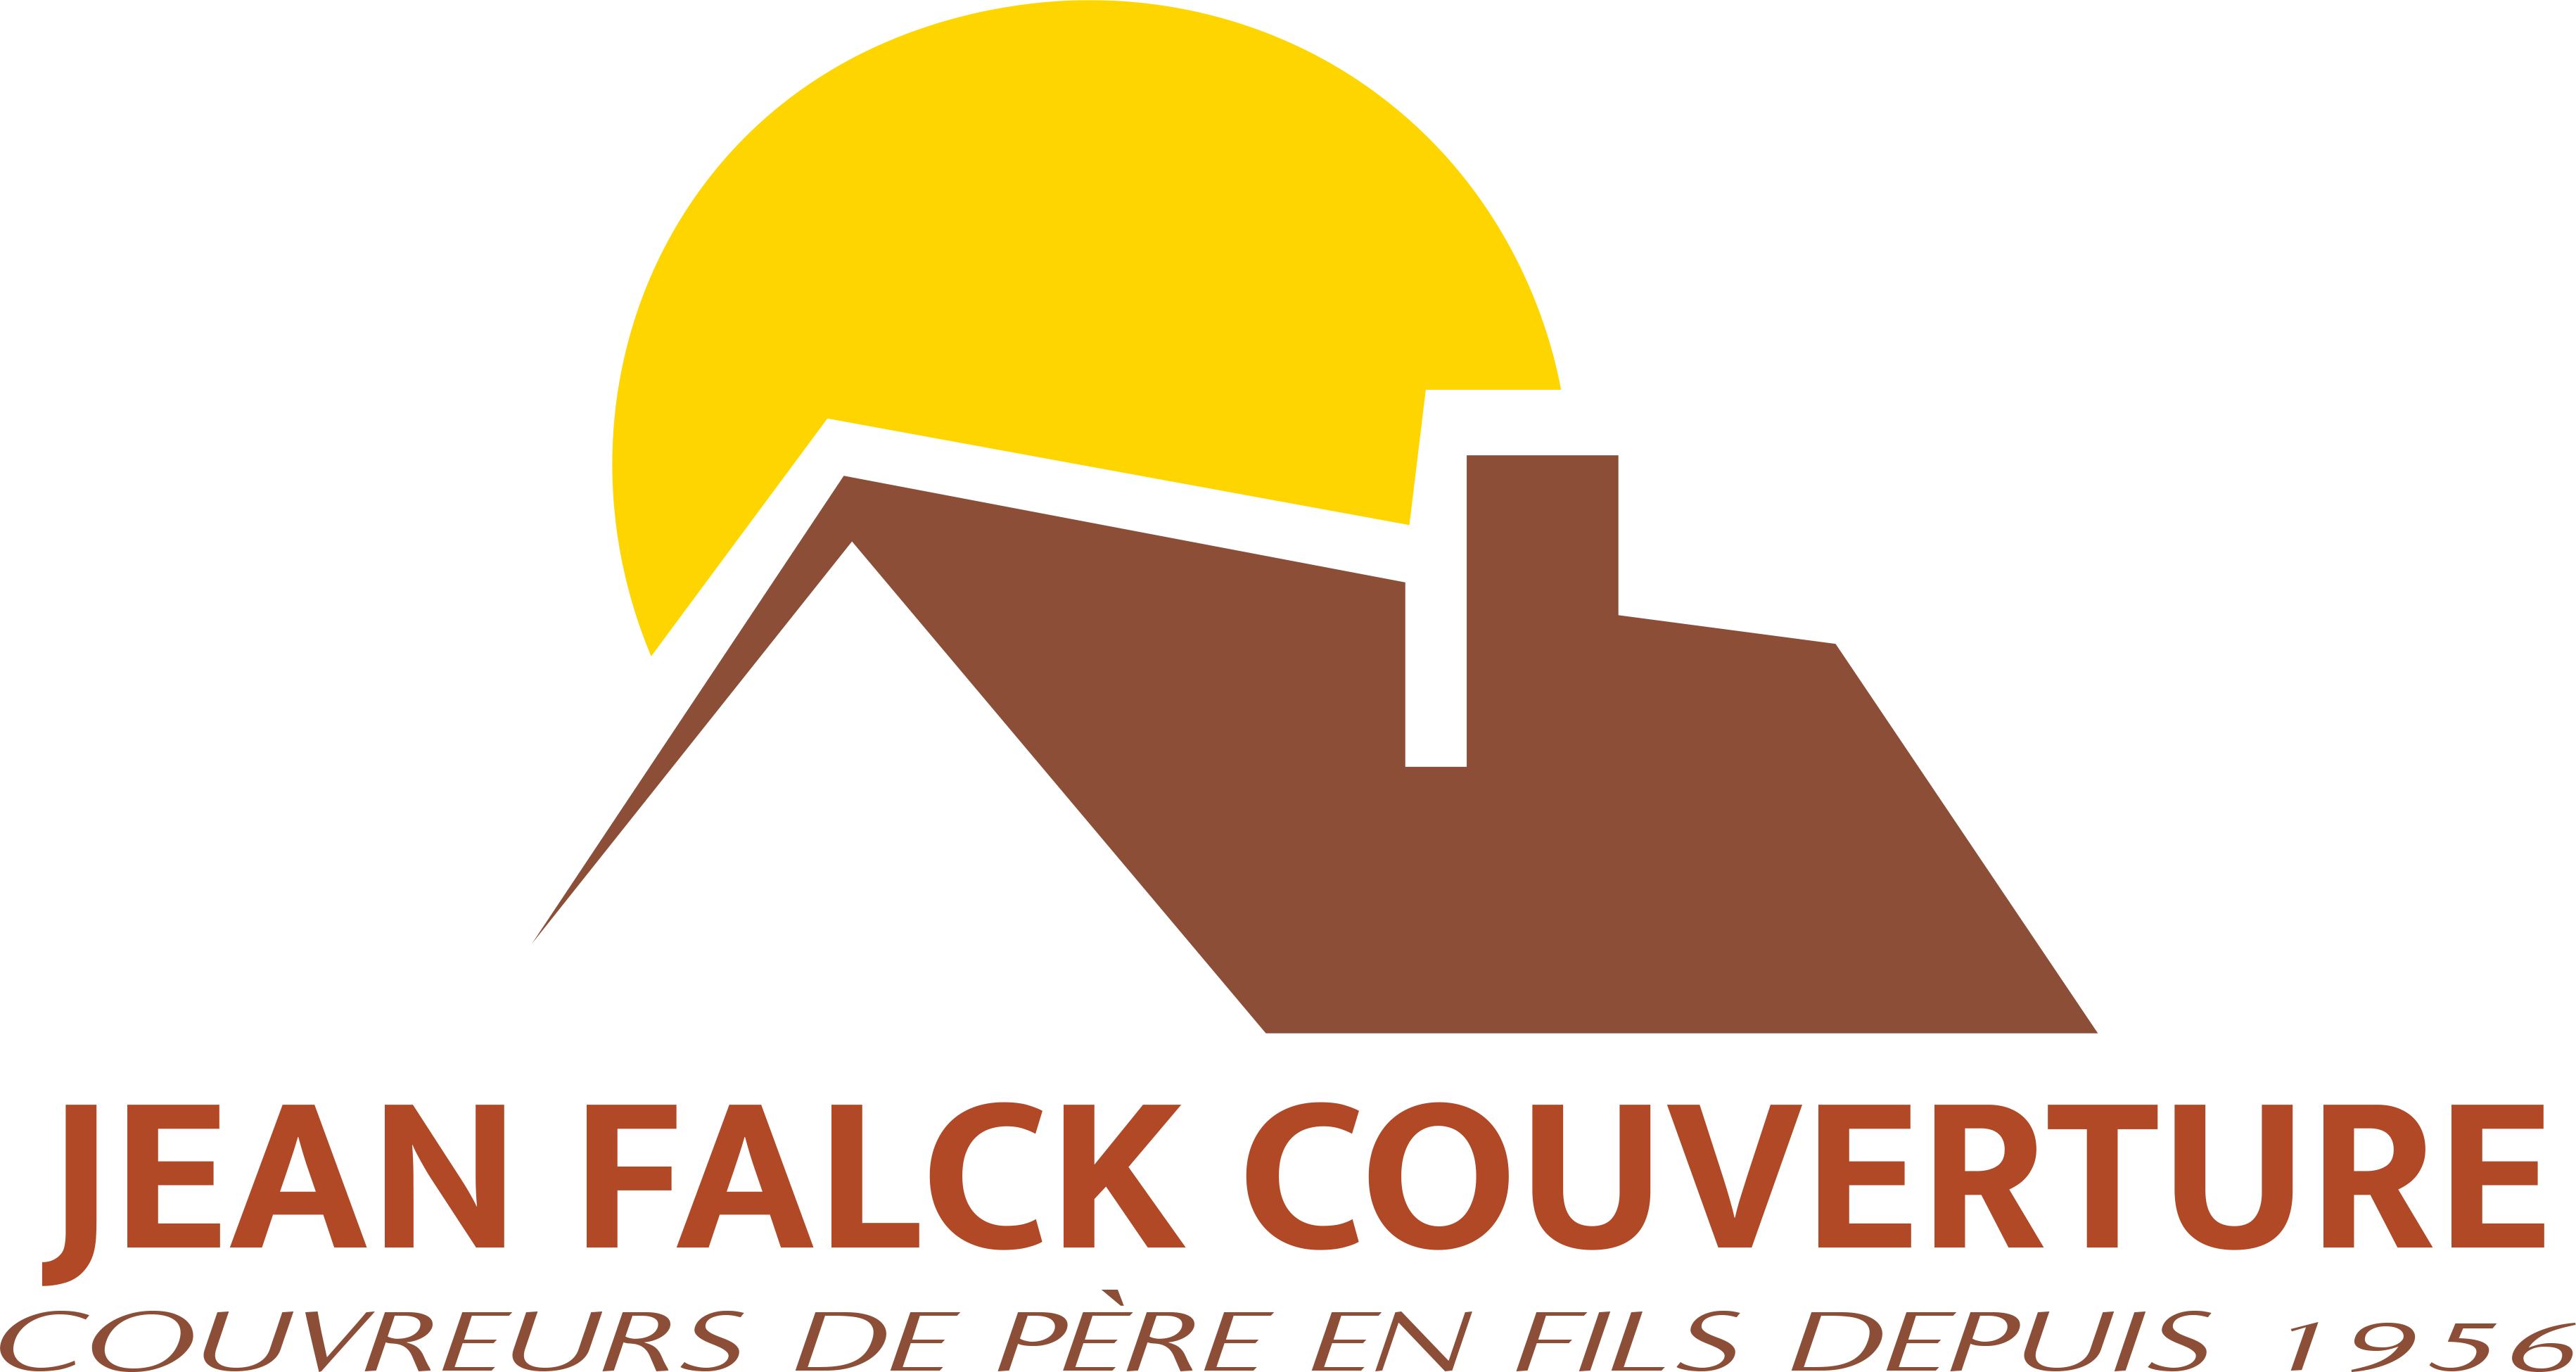 Jean Falck Couverture à Sucy-en-Brie - Jean Falck Couverture dans le Val de Marne. 